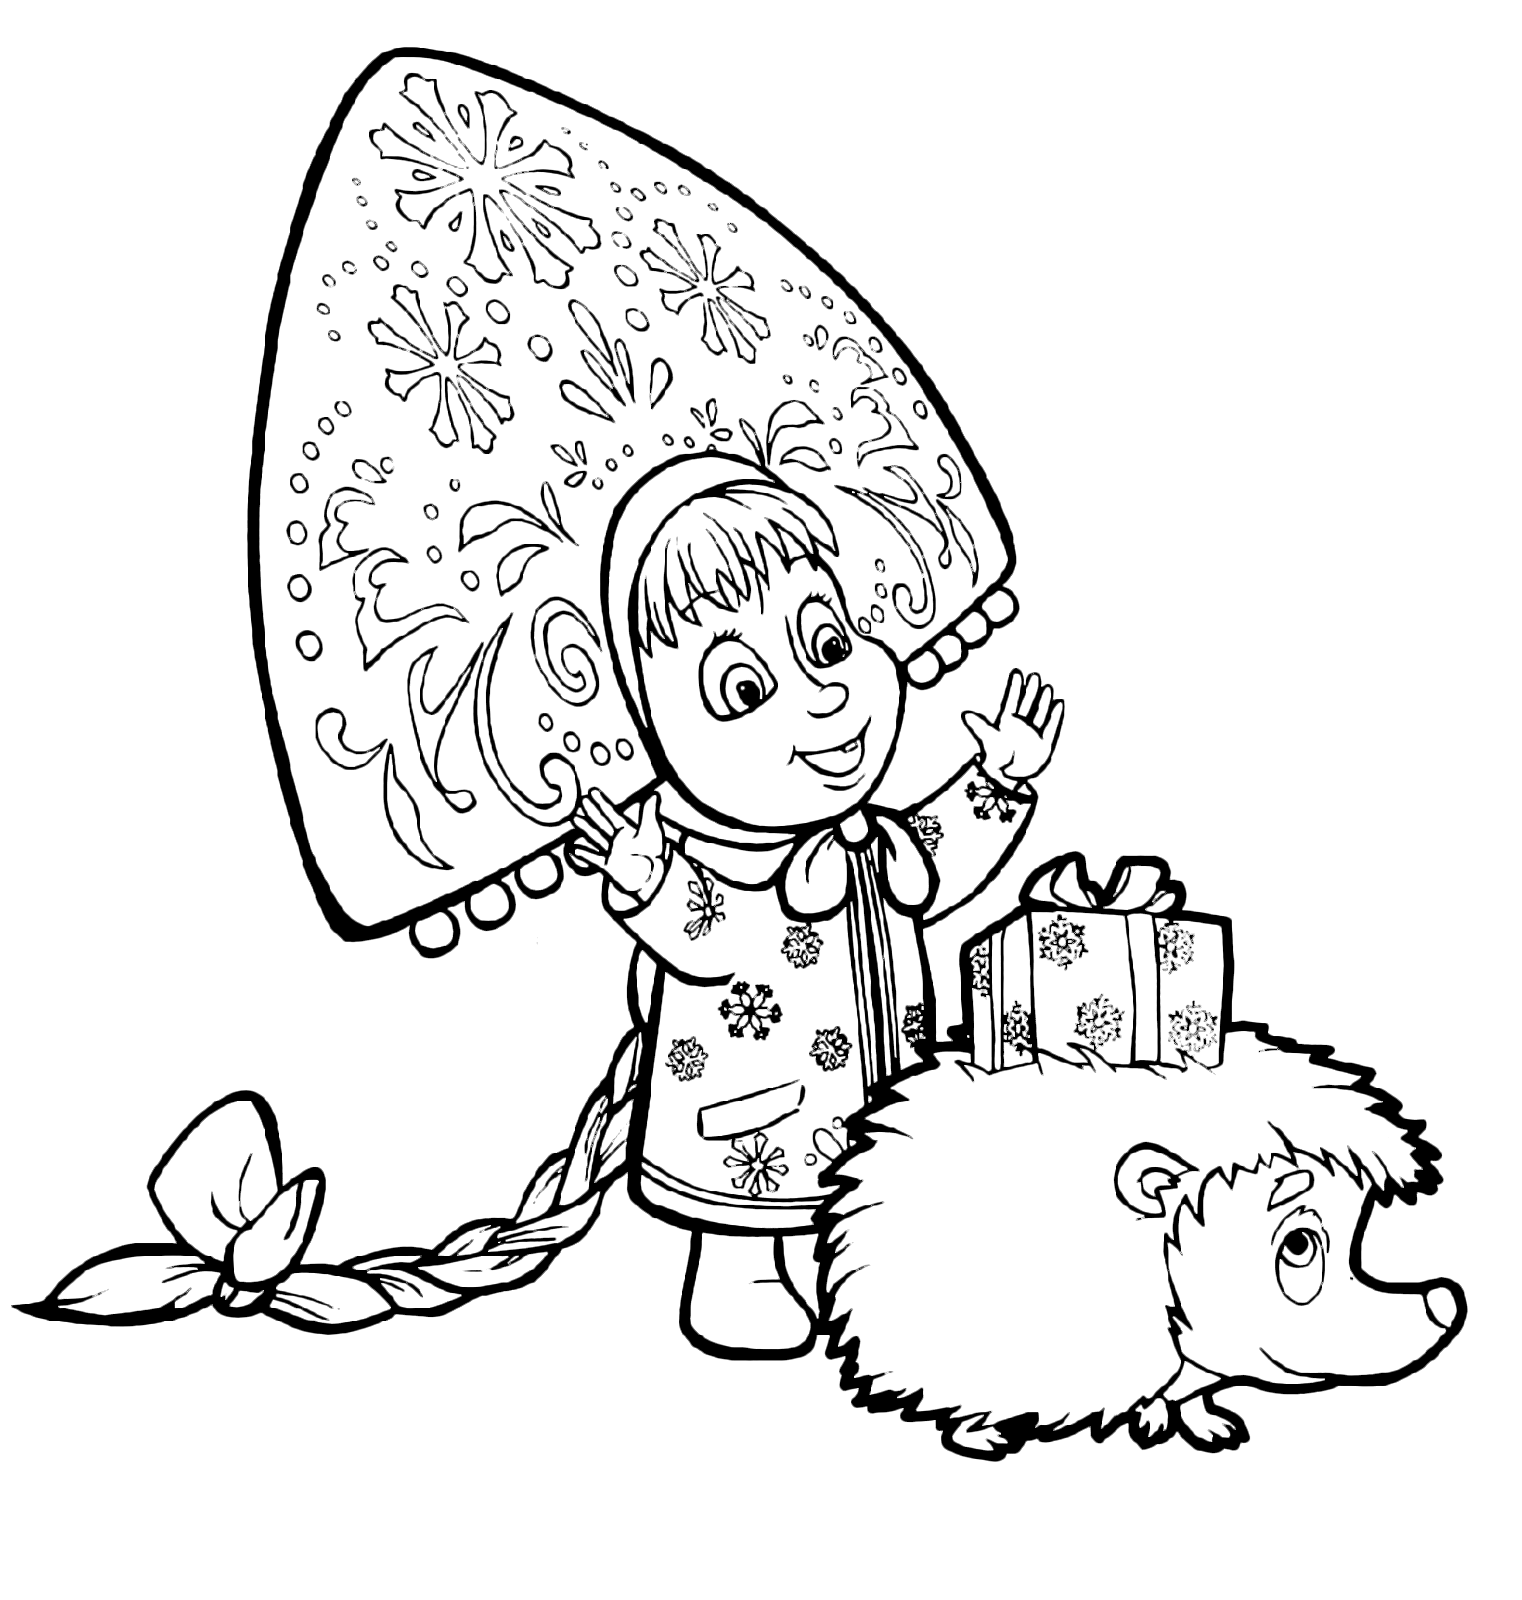 Masha e Orso - Masha con un cappello russo guarda il regalo sulla schiena del riccio